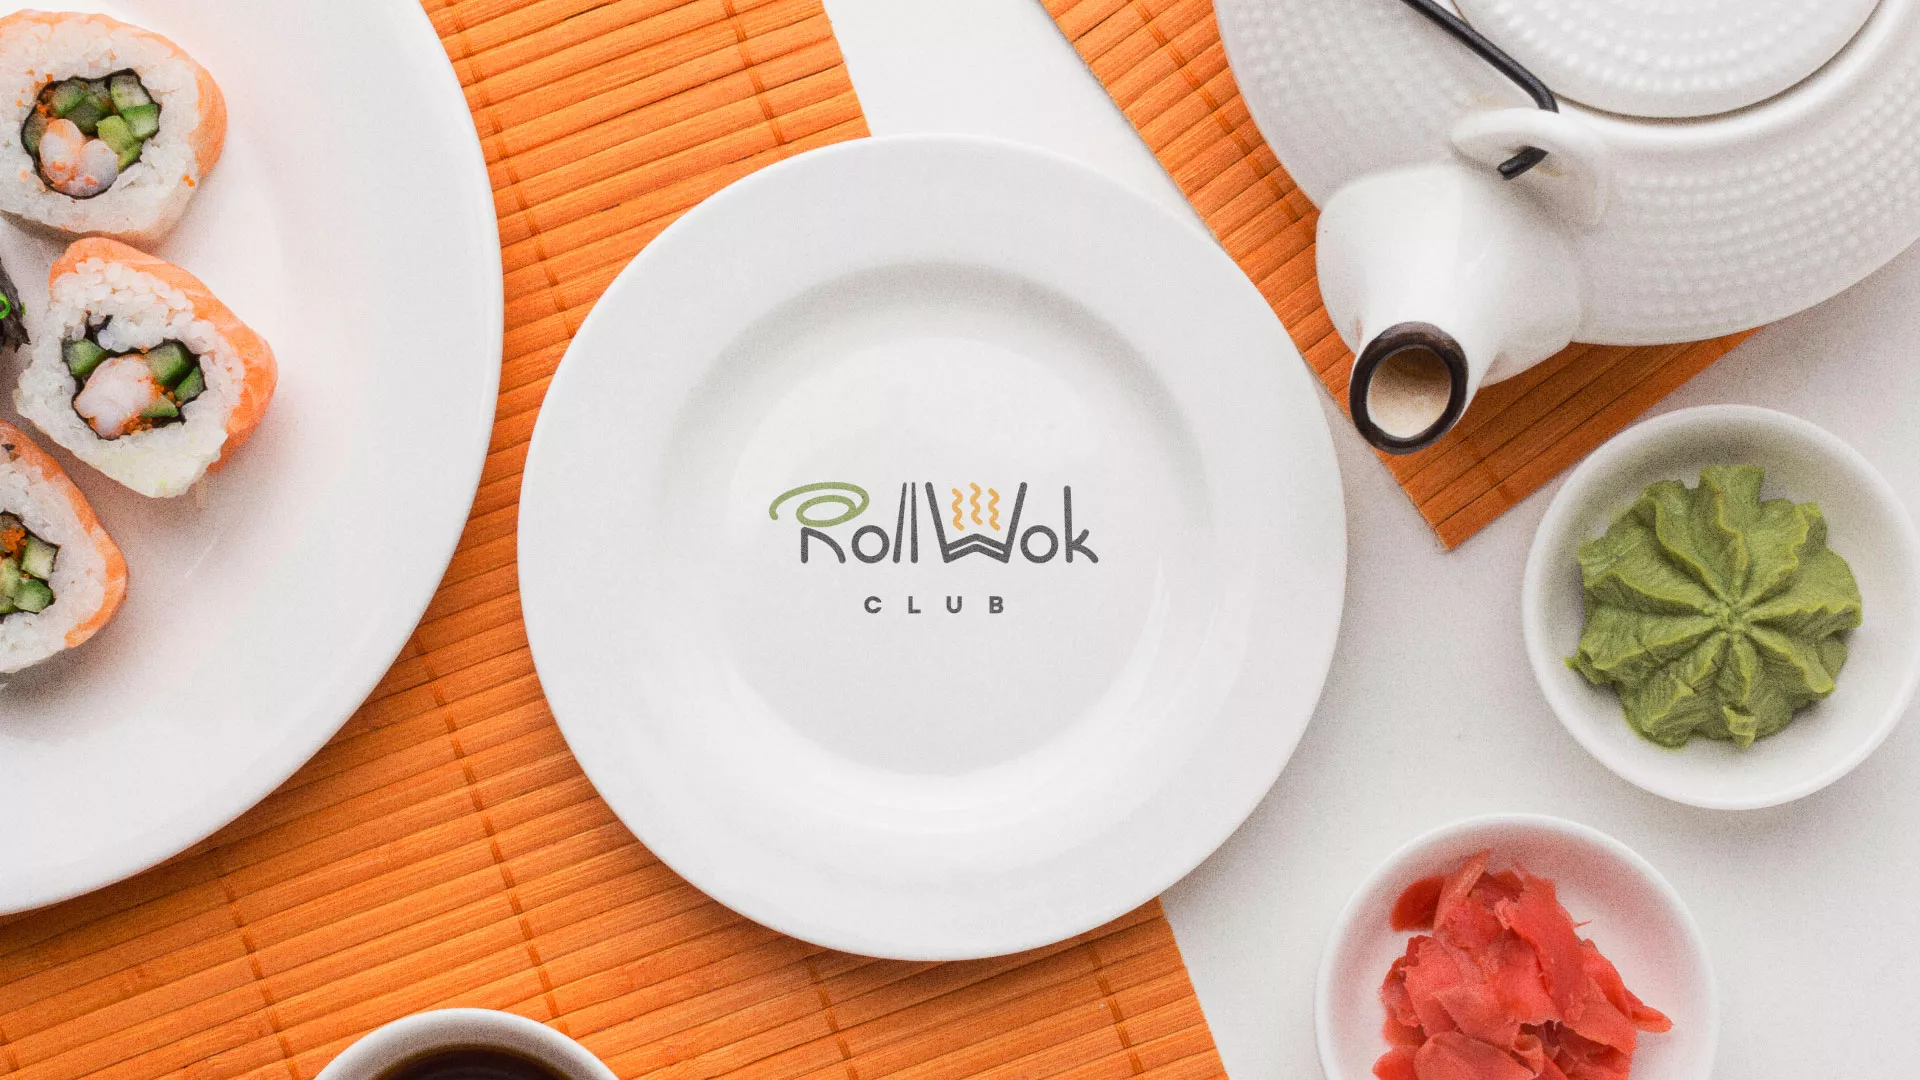 Разработка логотипа и фирменного стиля суши-бара «Roll Wok Club» в Вытегре